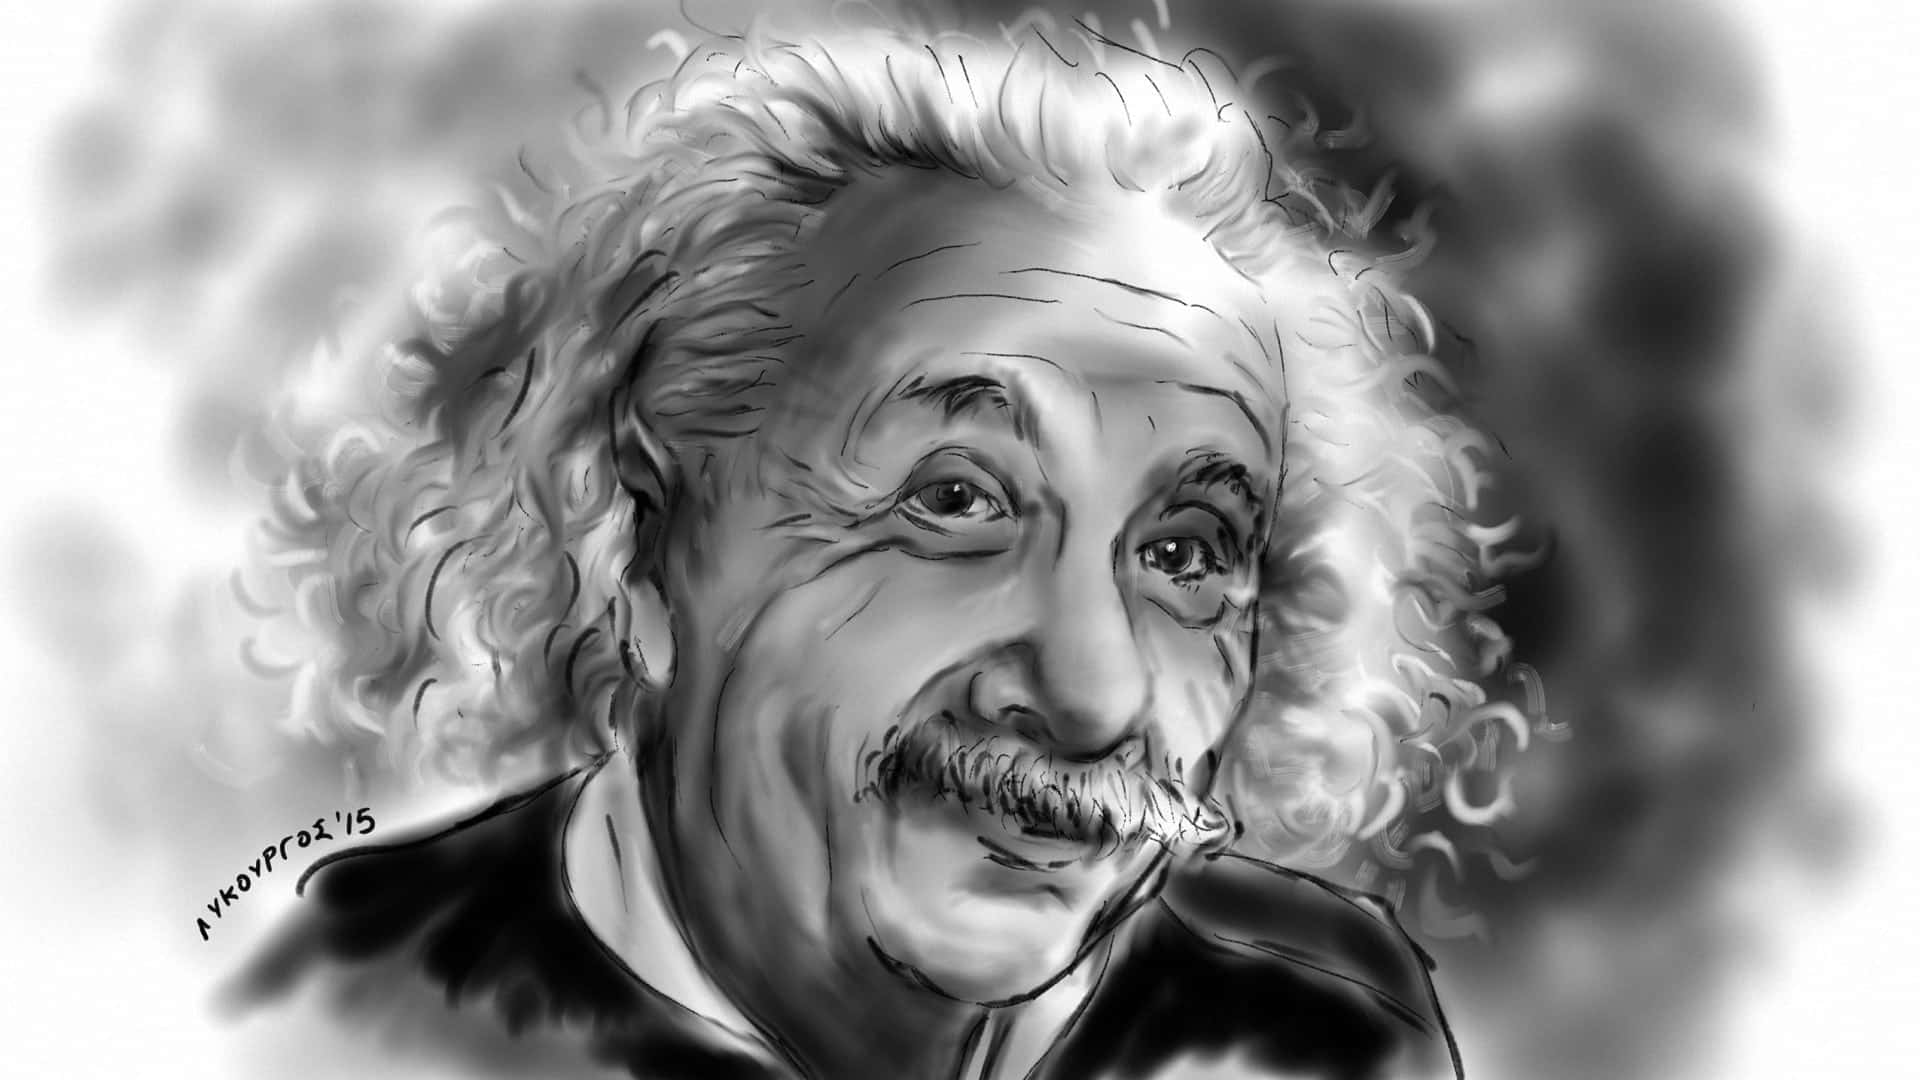 Albert Einstein - Innovative Physicist, Scientific Trailblazer